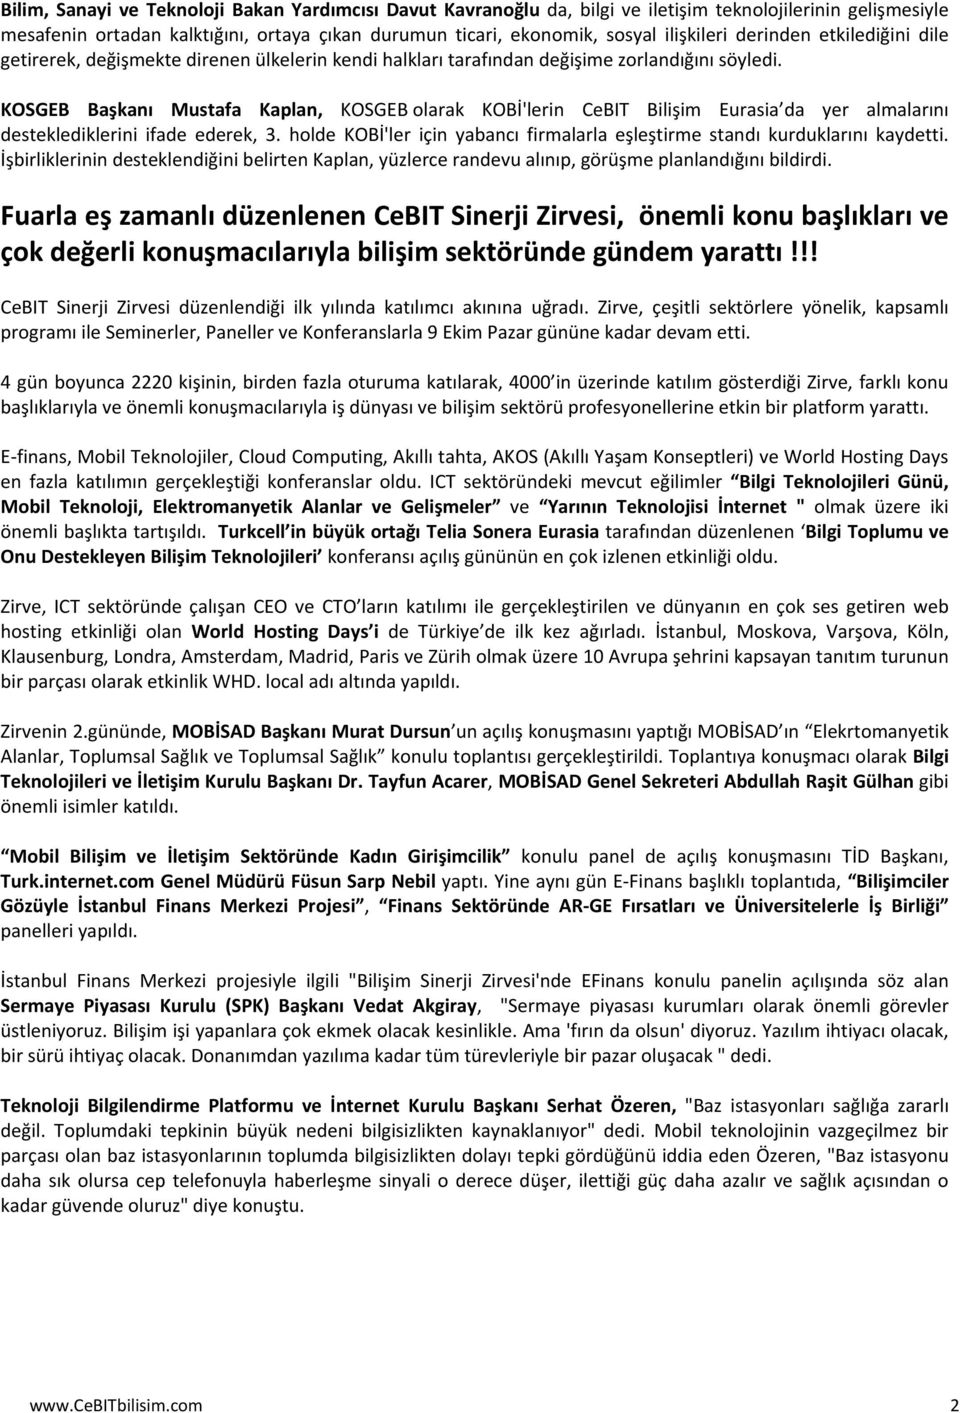 KOSGEB Başkanı Mustafa Kaplan, KOSGEB olarak KOBİ'lerin CeBIT Bilişim Eurasia da yer almalarını desteklediklerini ifade ederek, 3.